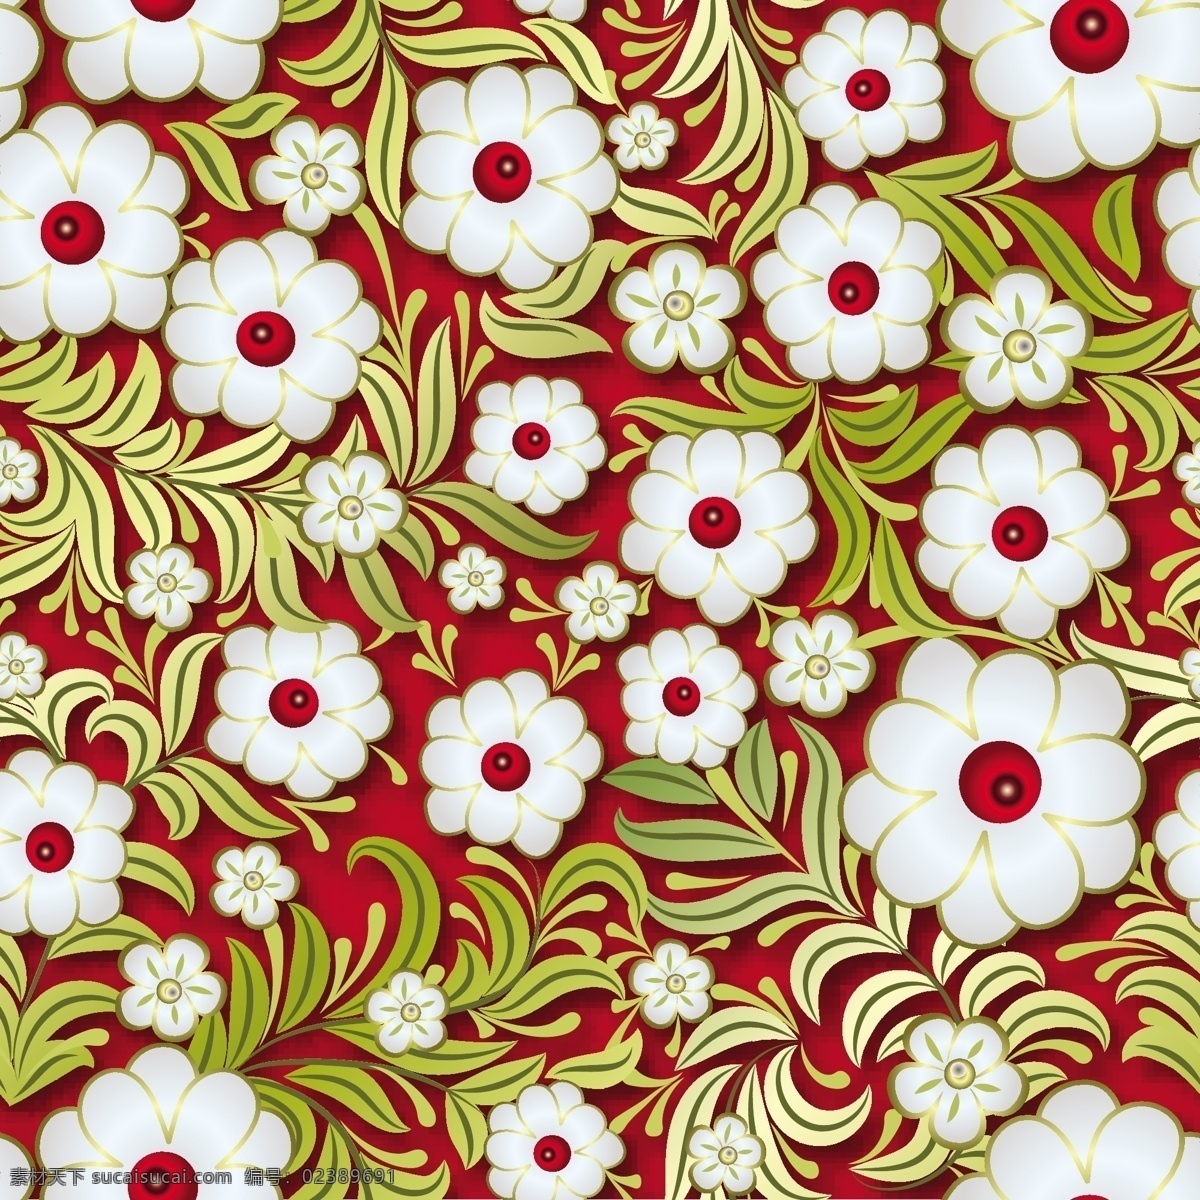 白色 红色 立体 无缝 背景 白色花朵 底纹背景 服装印花 花朵花纹 家纺印花 渐变花朵 手绘立体 无缝印花 植物花卉 植物手绘